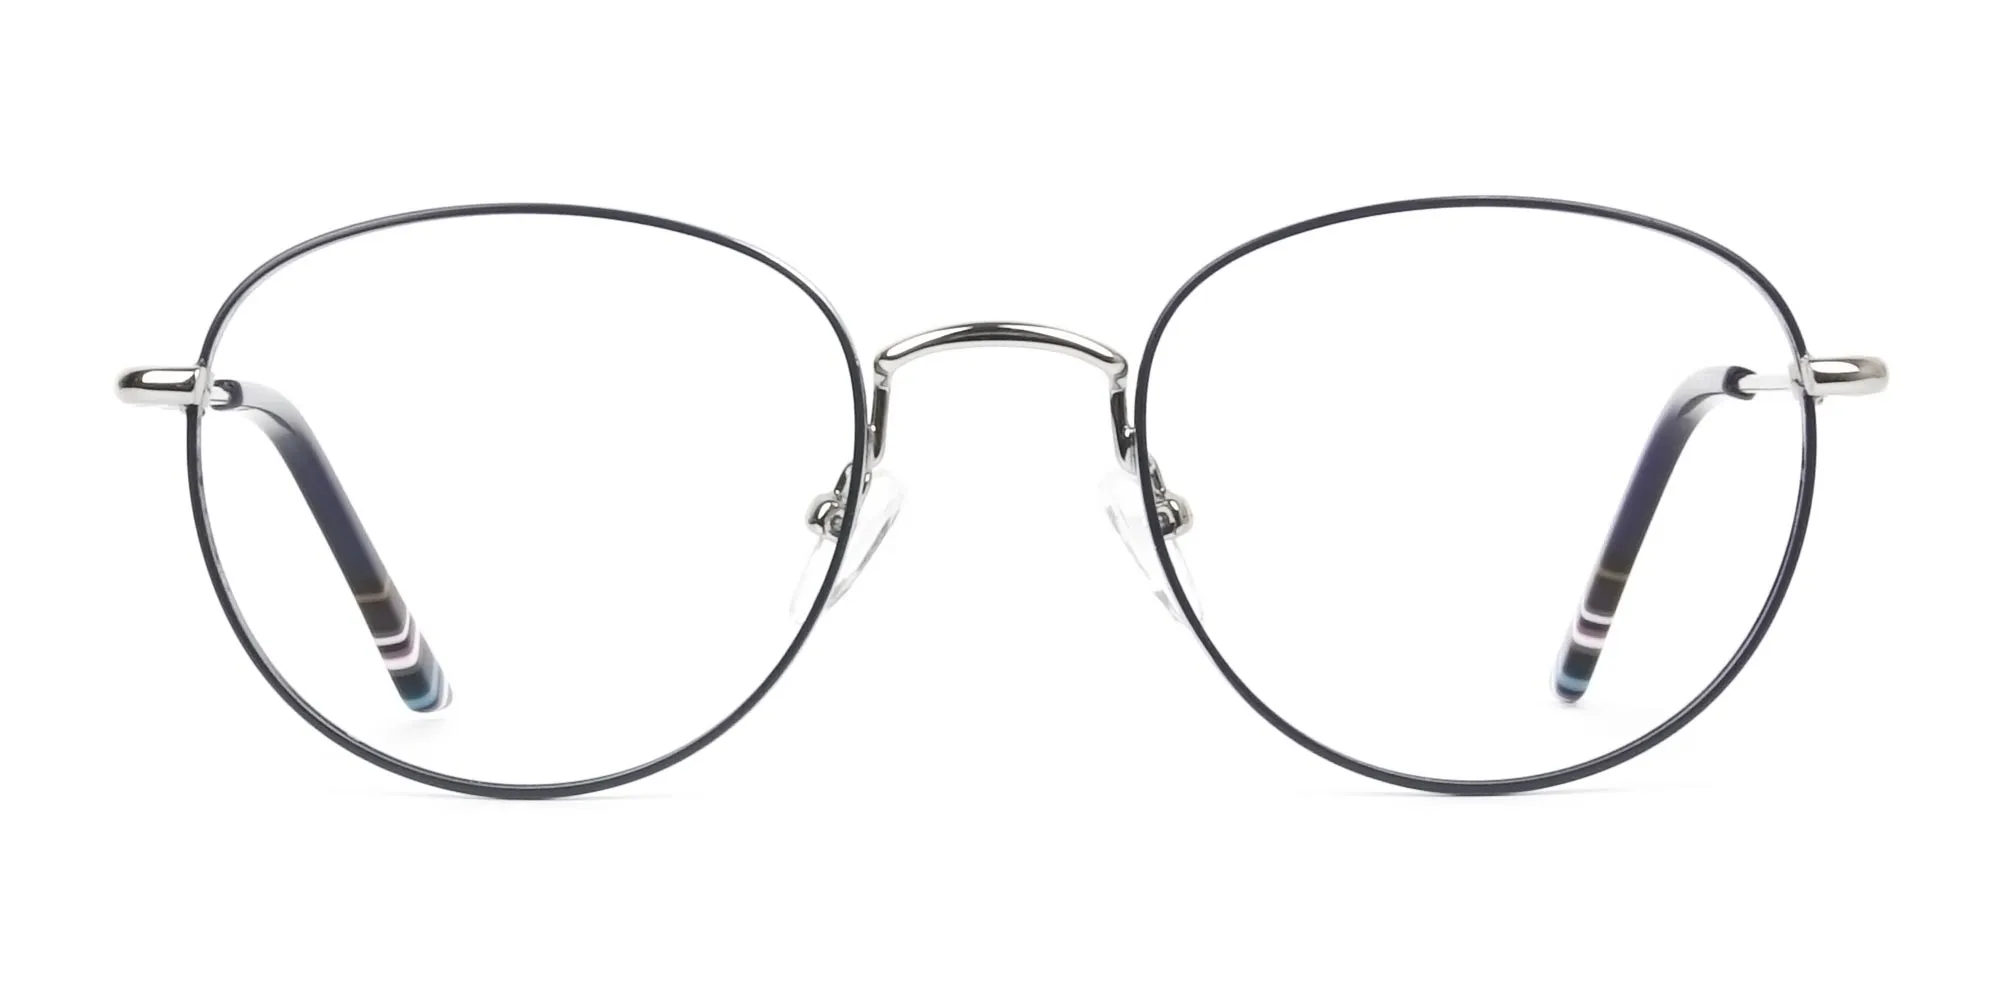 Vintage Round Glasses - WISTOW 4 | Specscart® UK